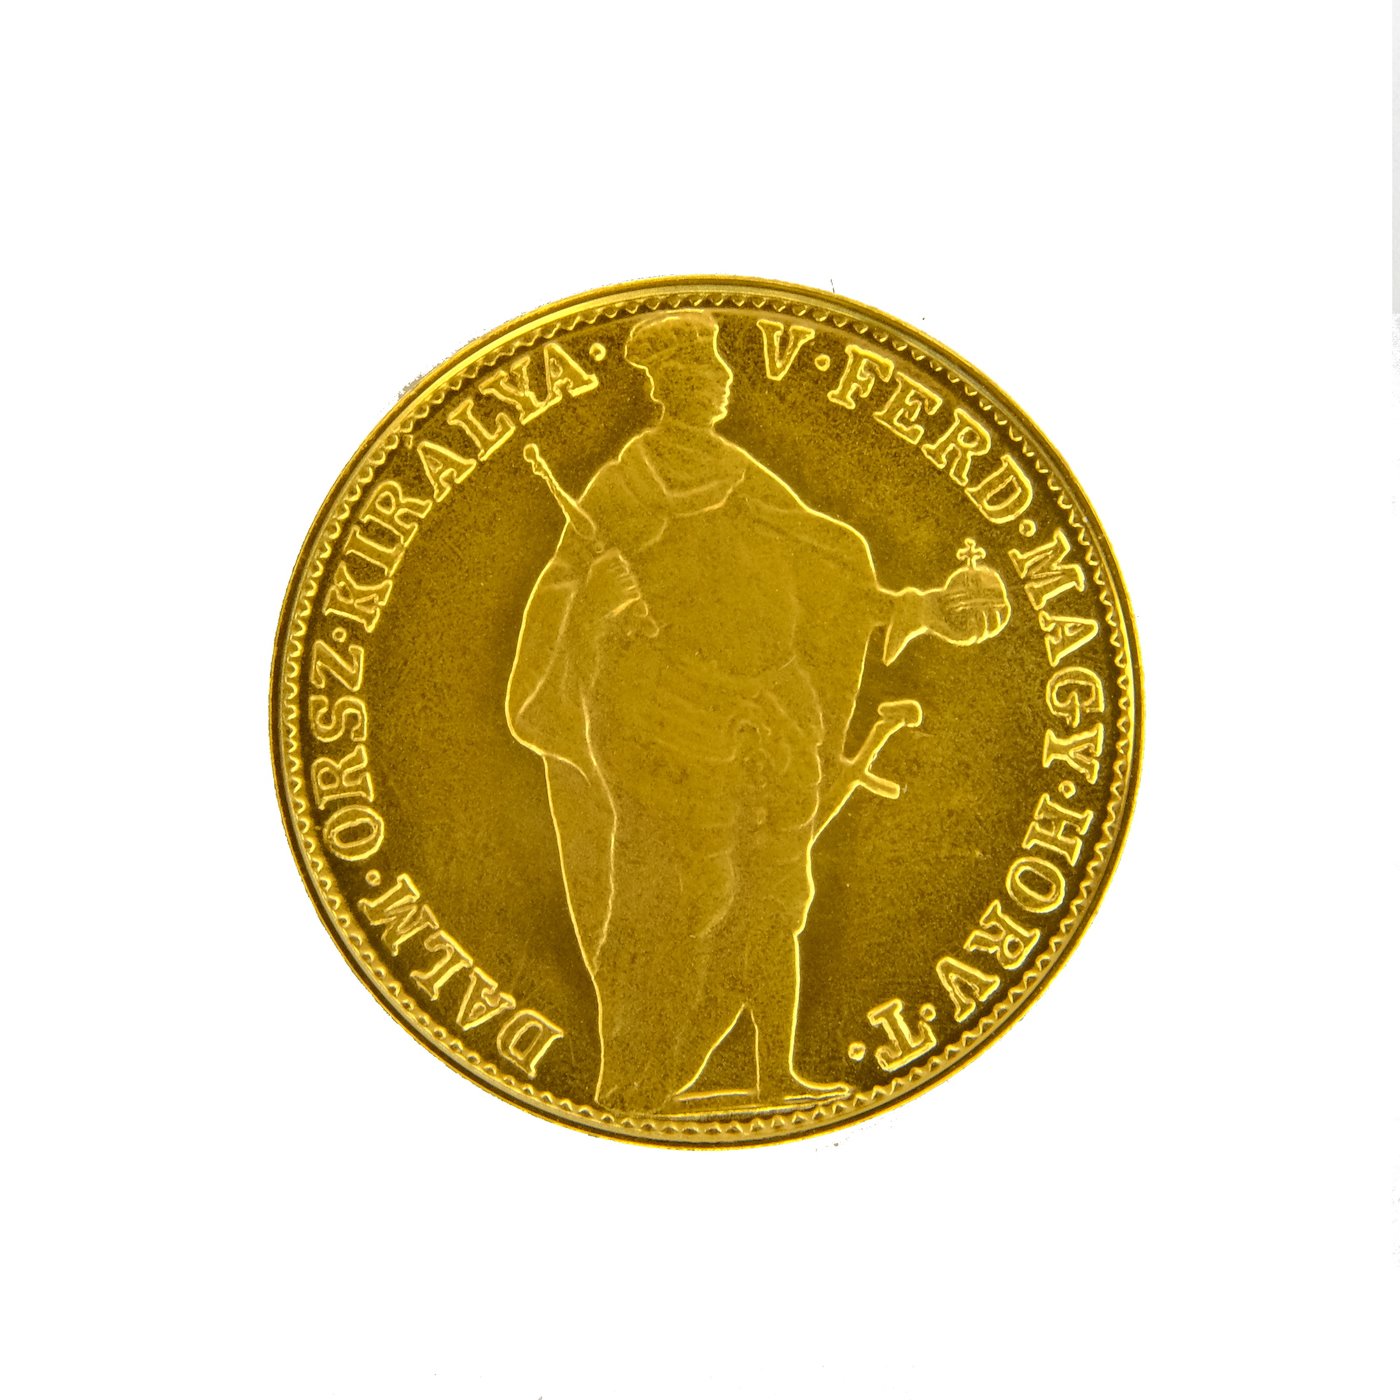 .. - Rakousko Uhersko zlatý dukát 1849 revoluční Novoražba, zlato 999/1000, hrubá hmotnost 3,49 g